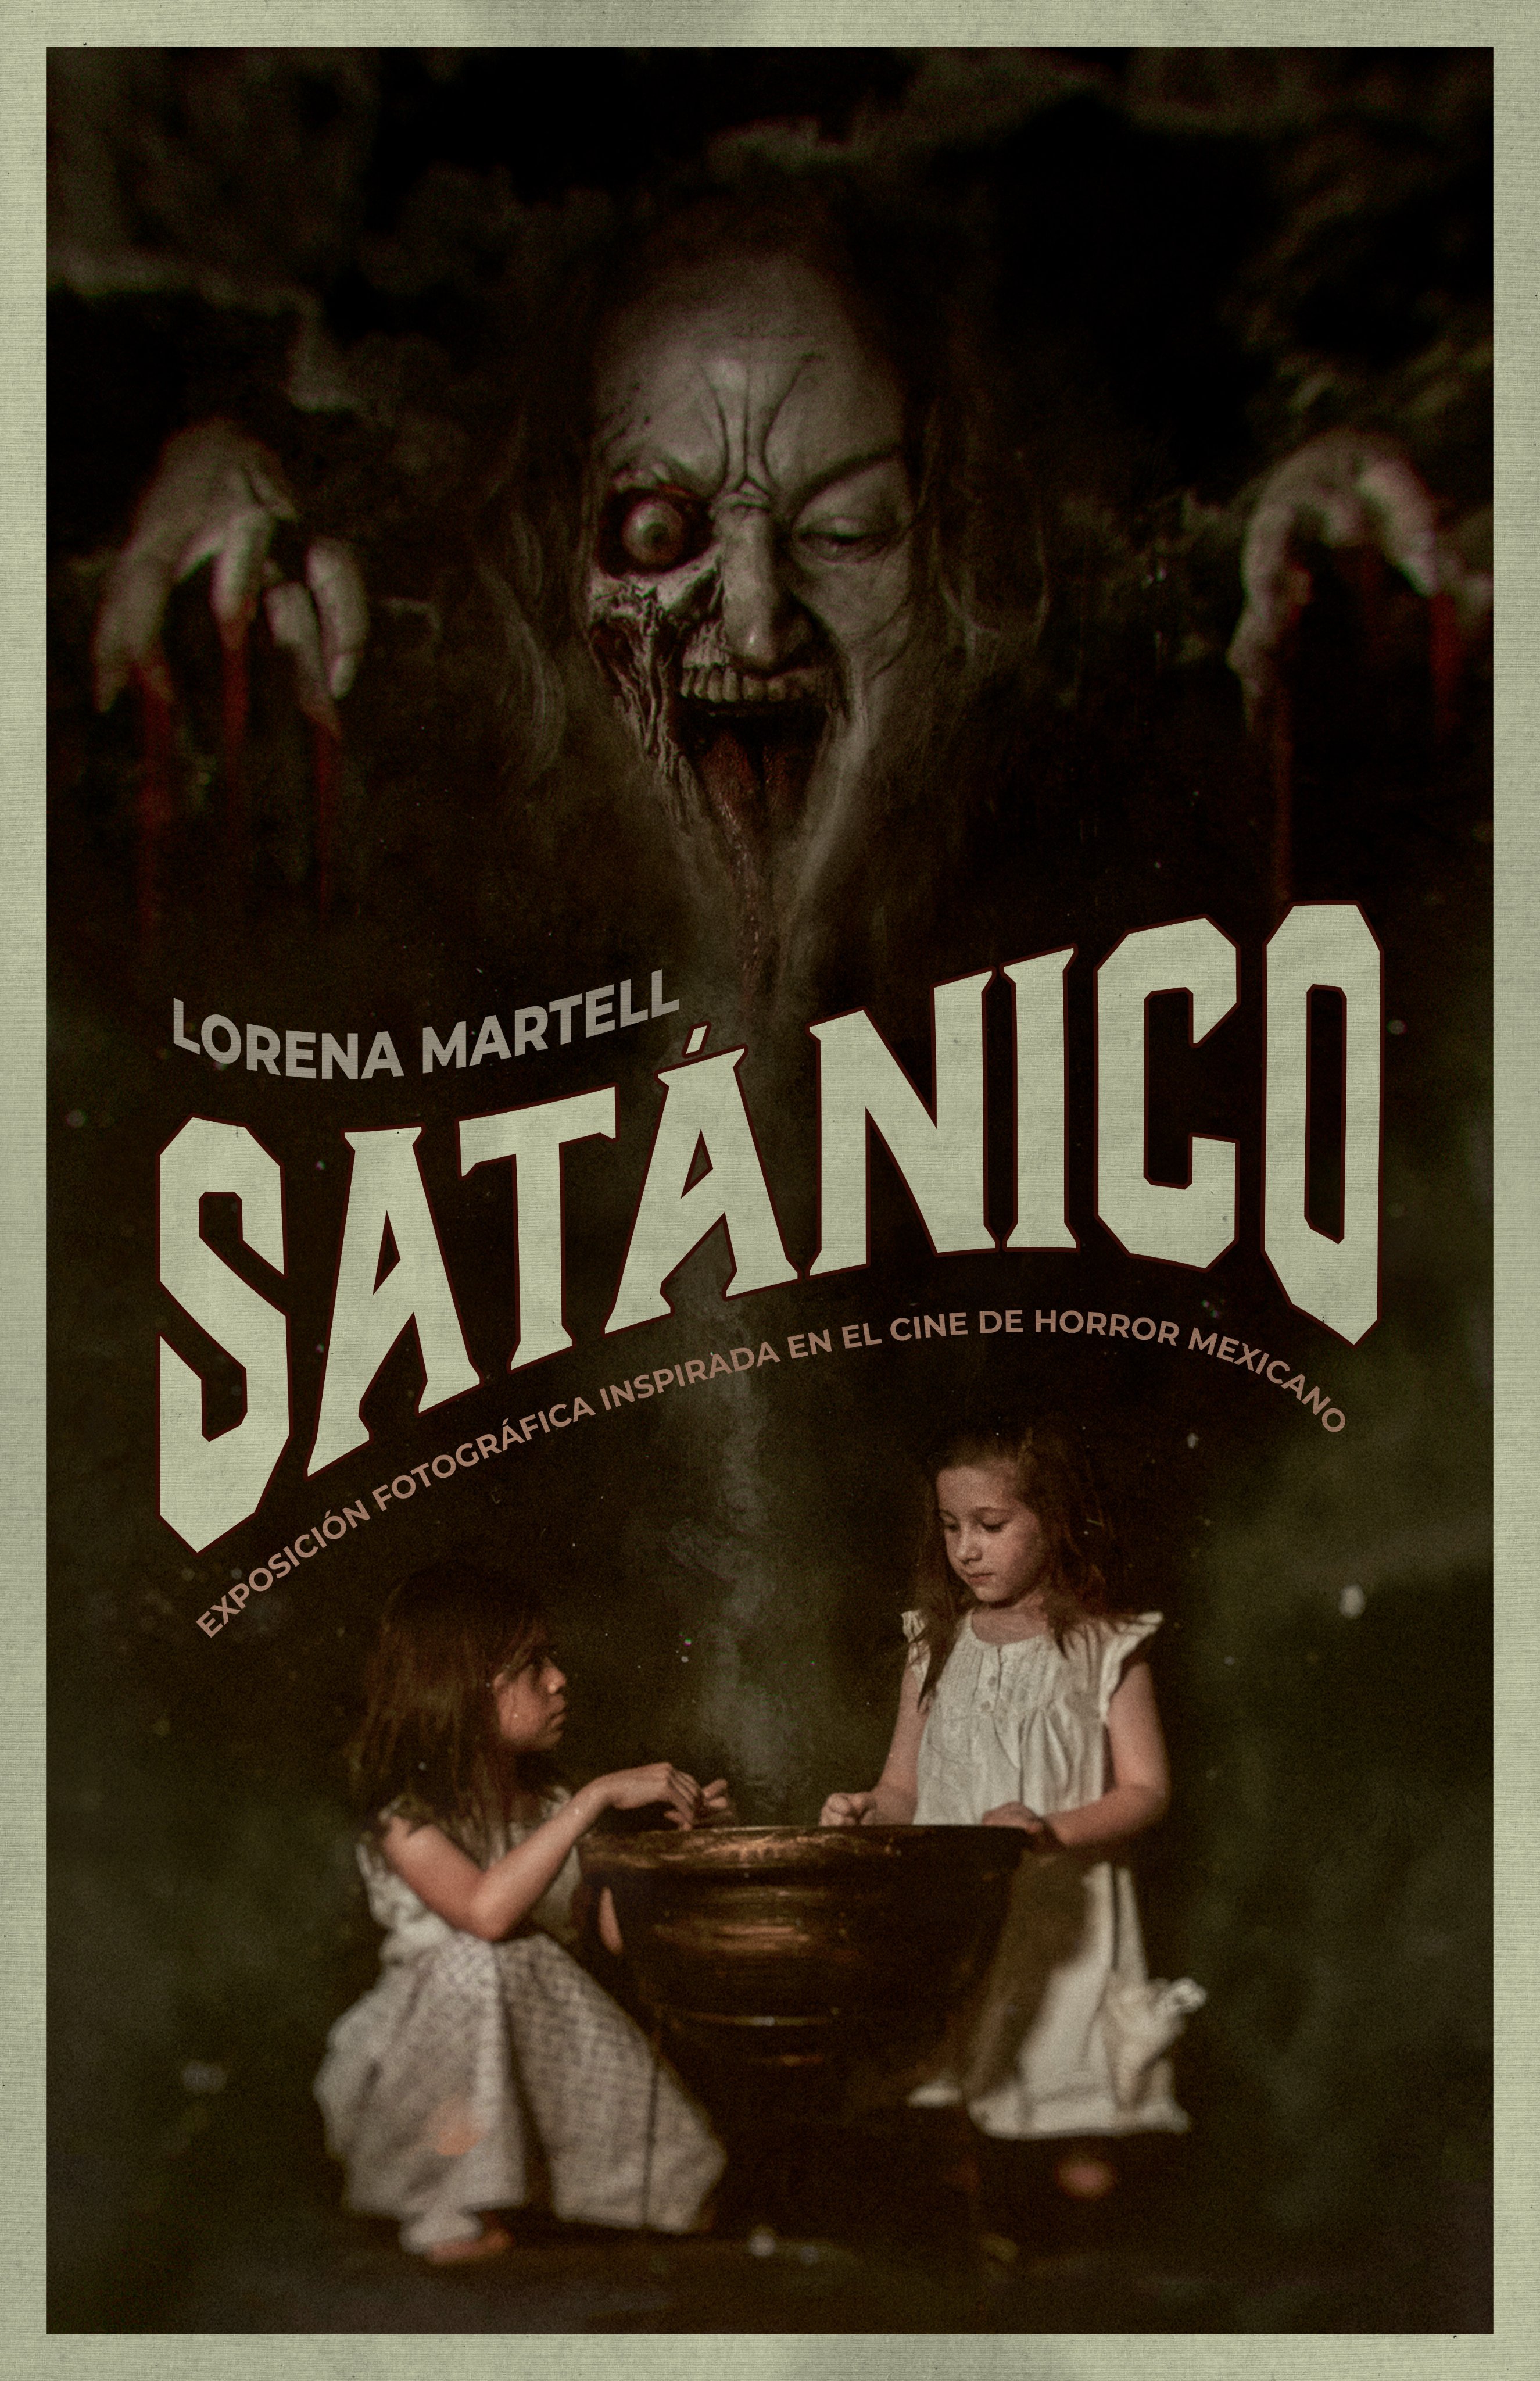 satanico lore martell macabro film festival